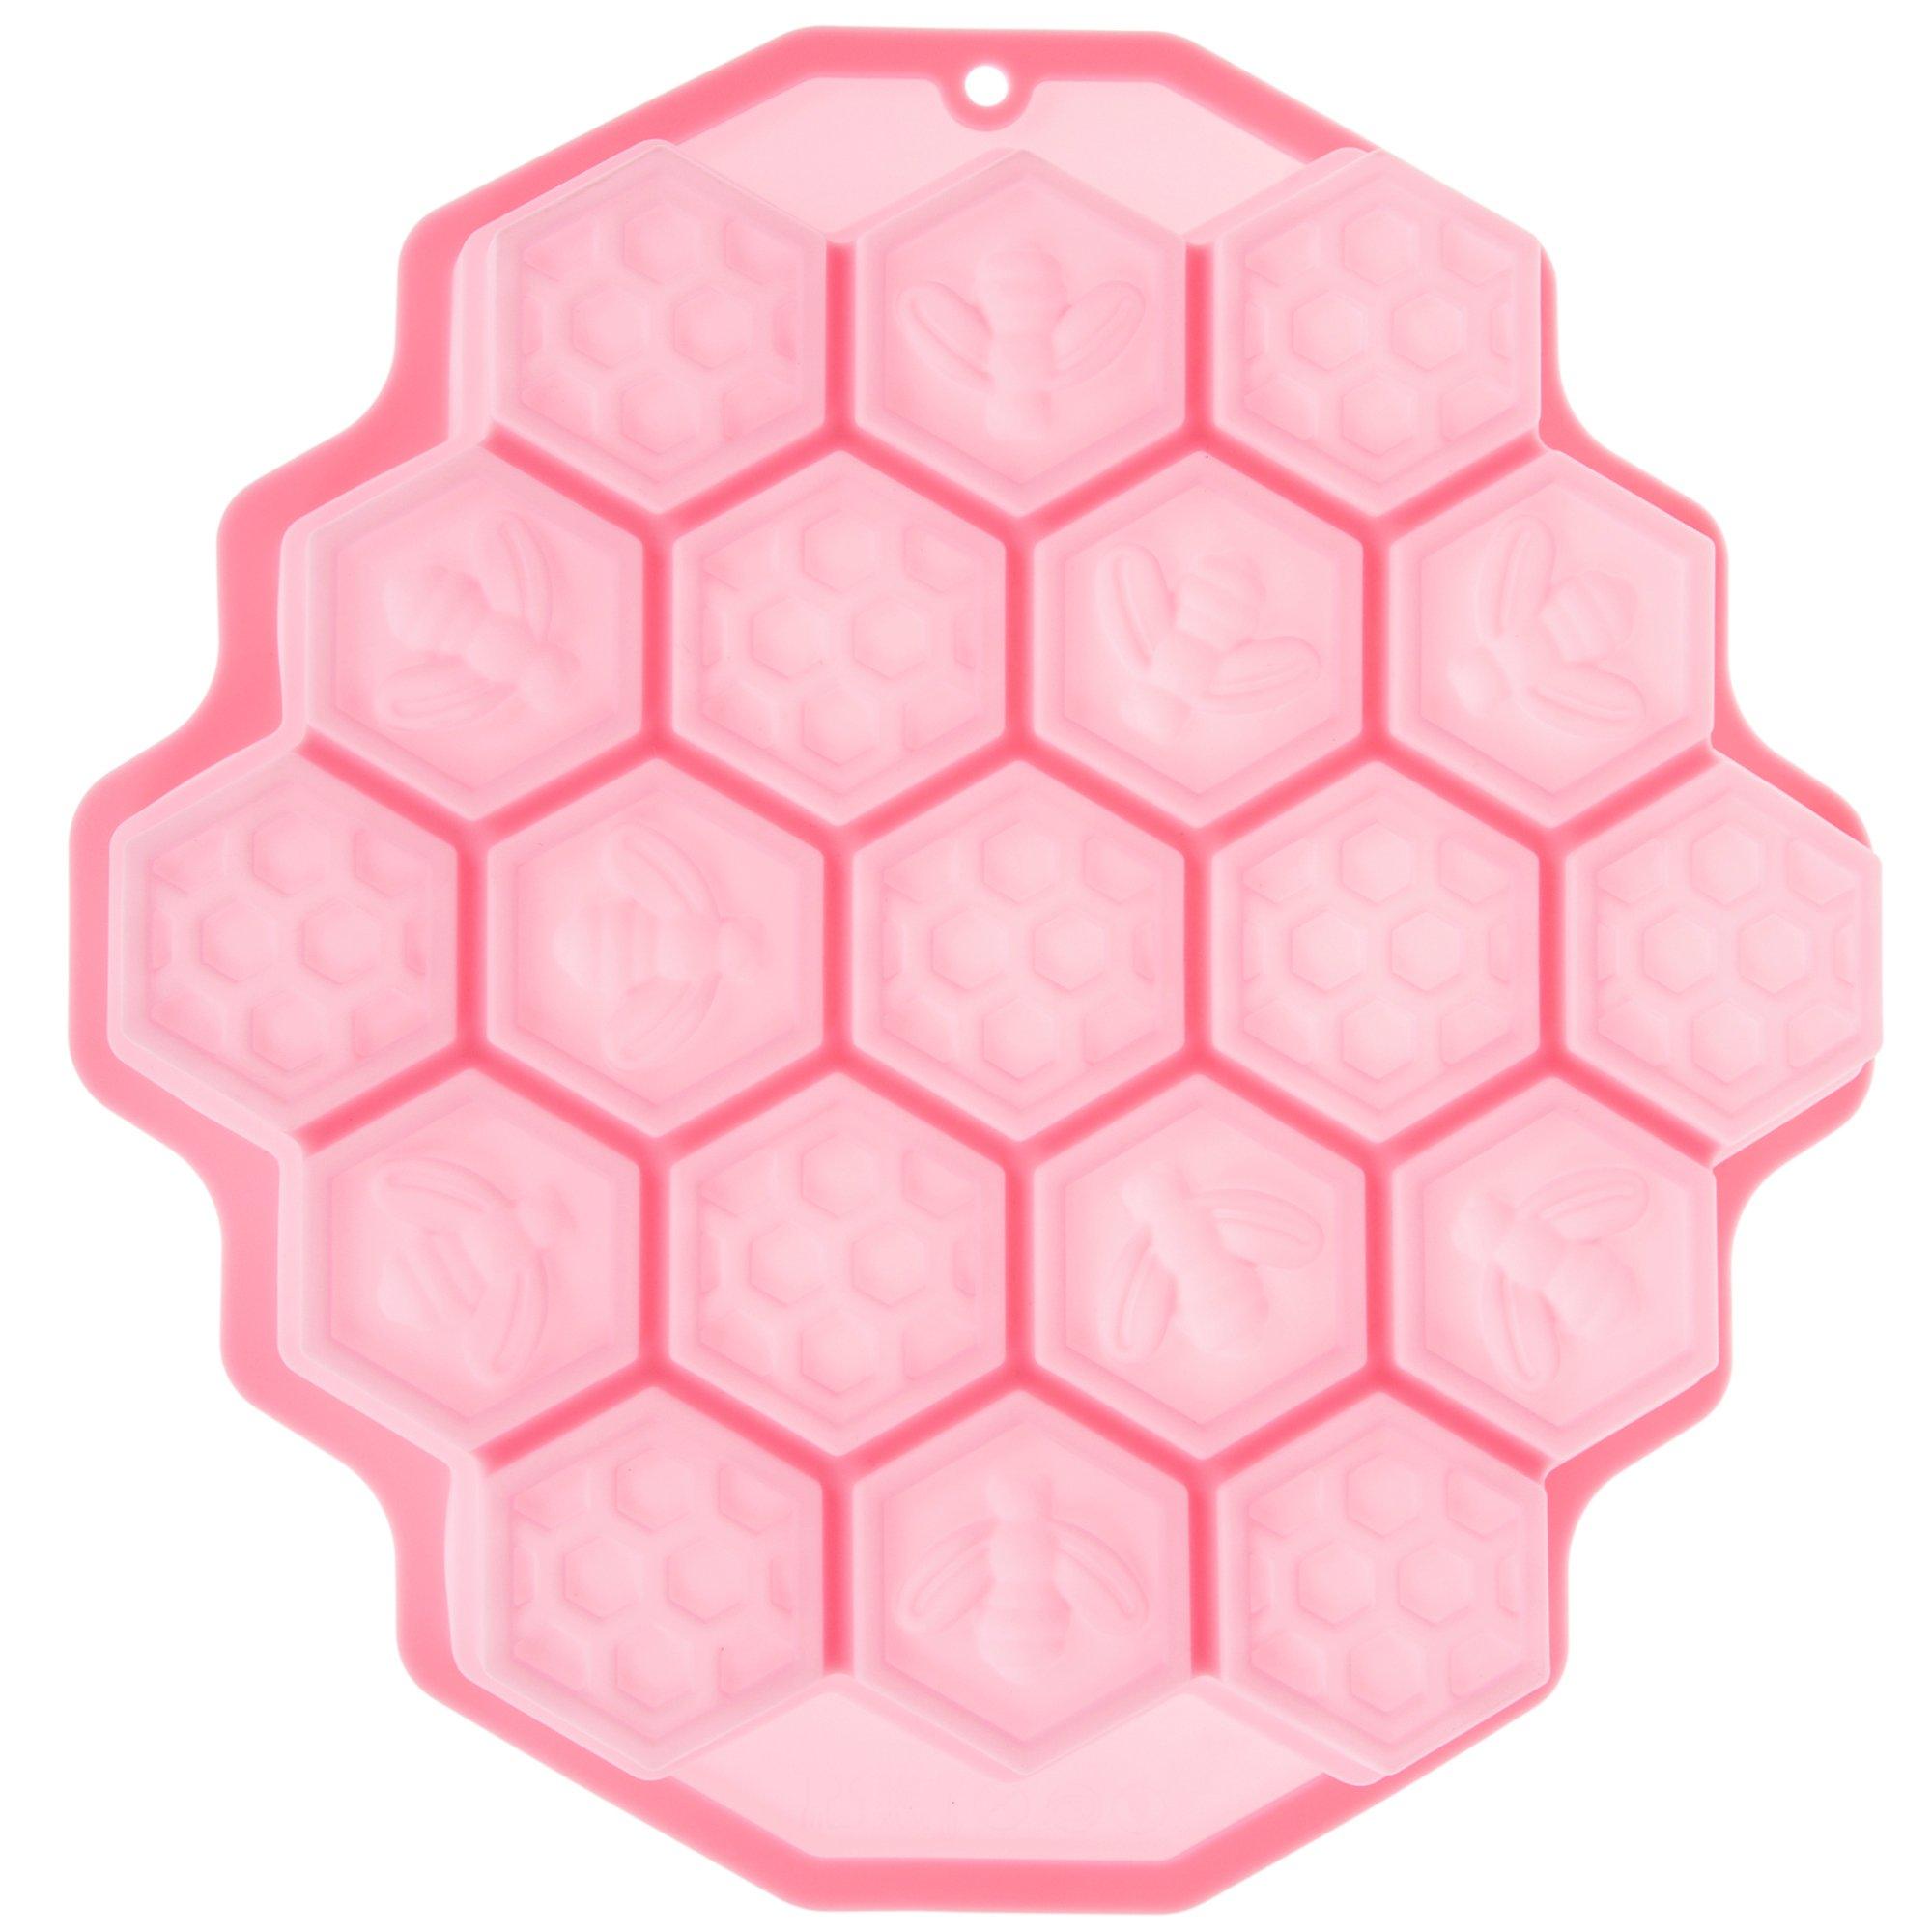 Honeycomb breakup mold - Hobby Grade